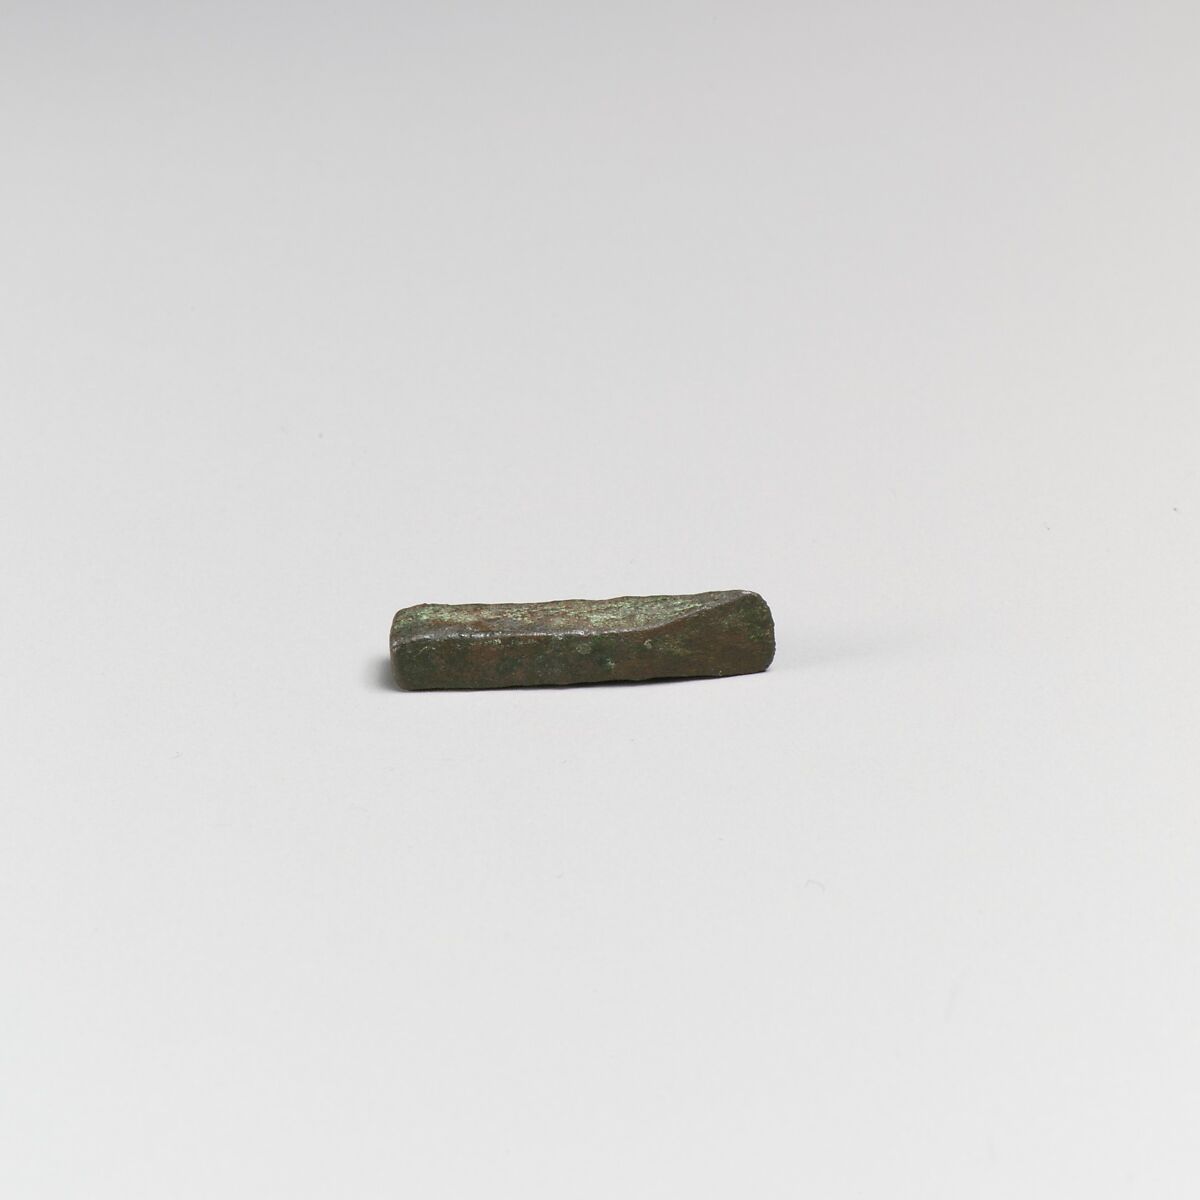 Small bronze chisel, Bronze, Minoan 